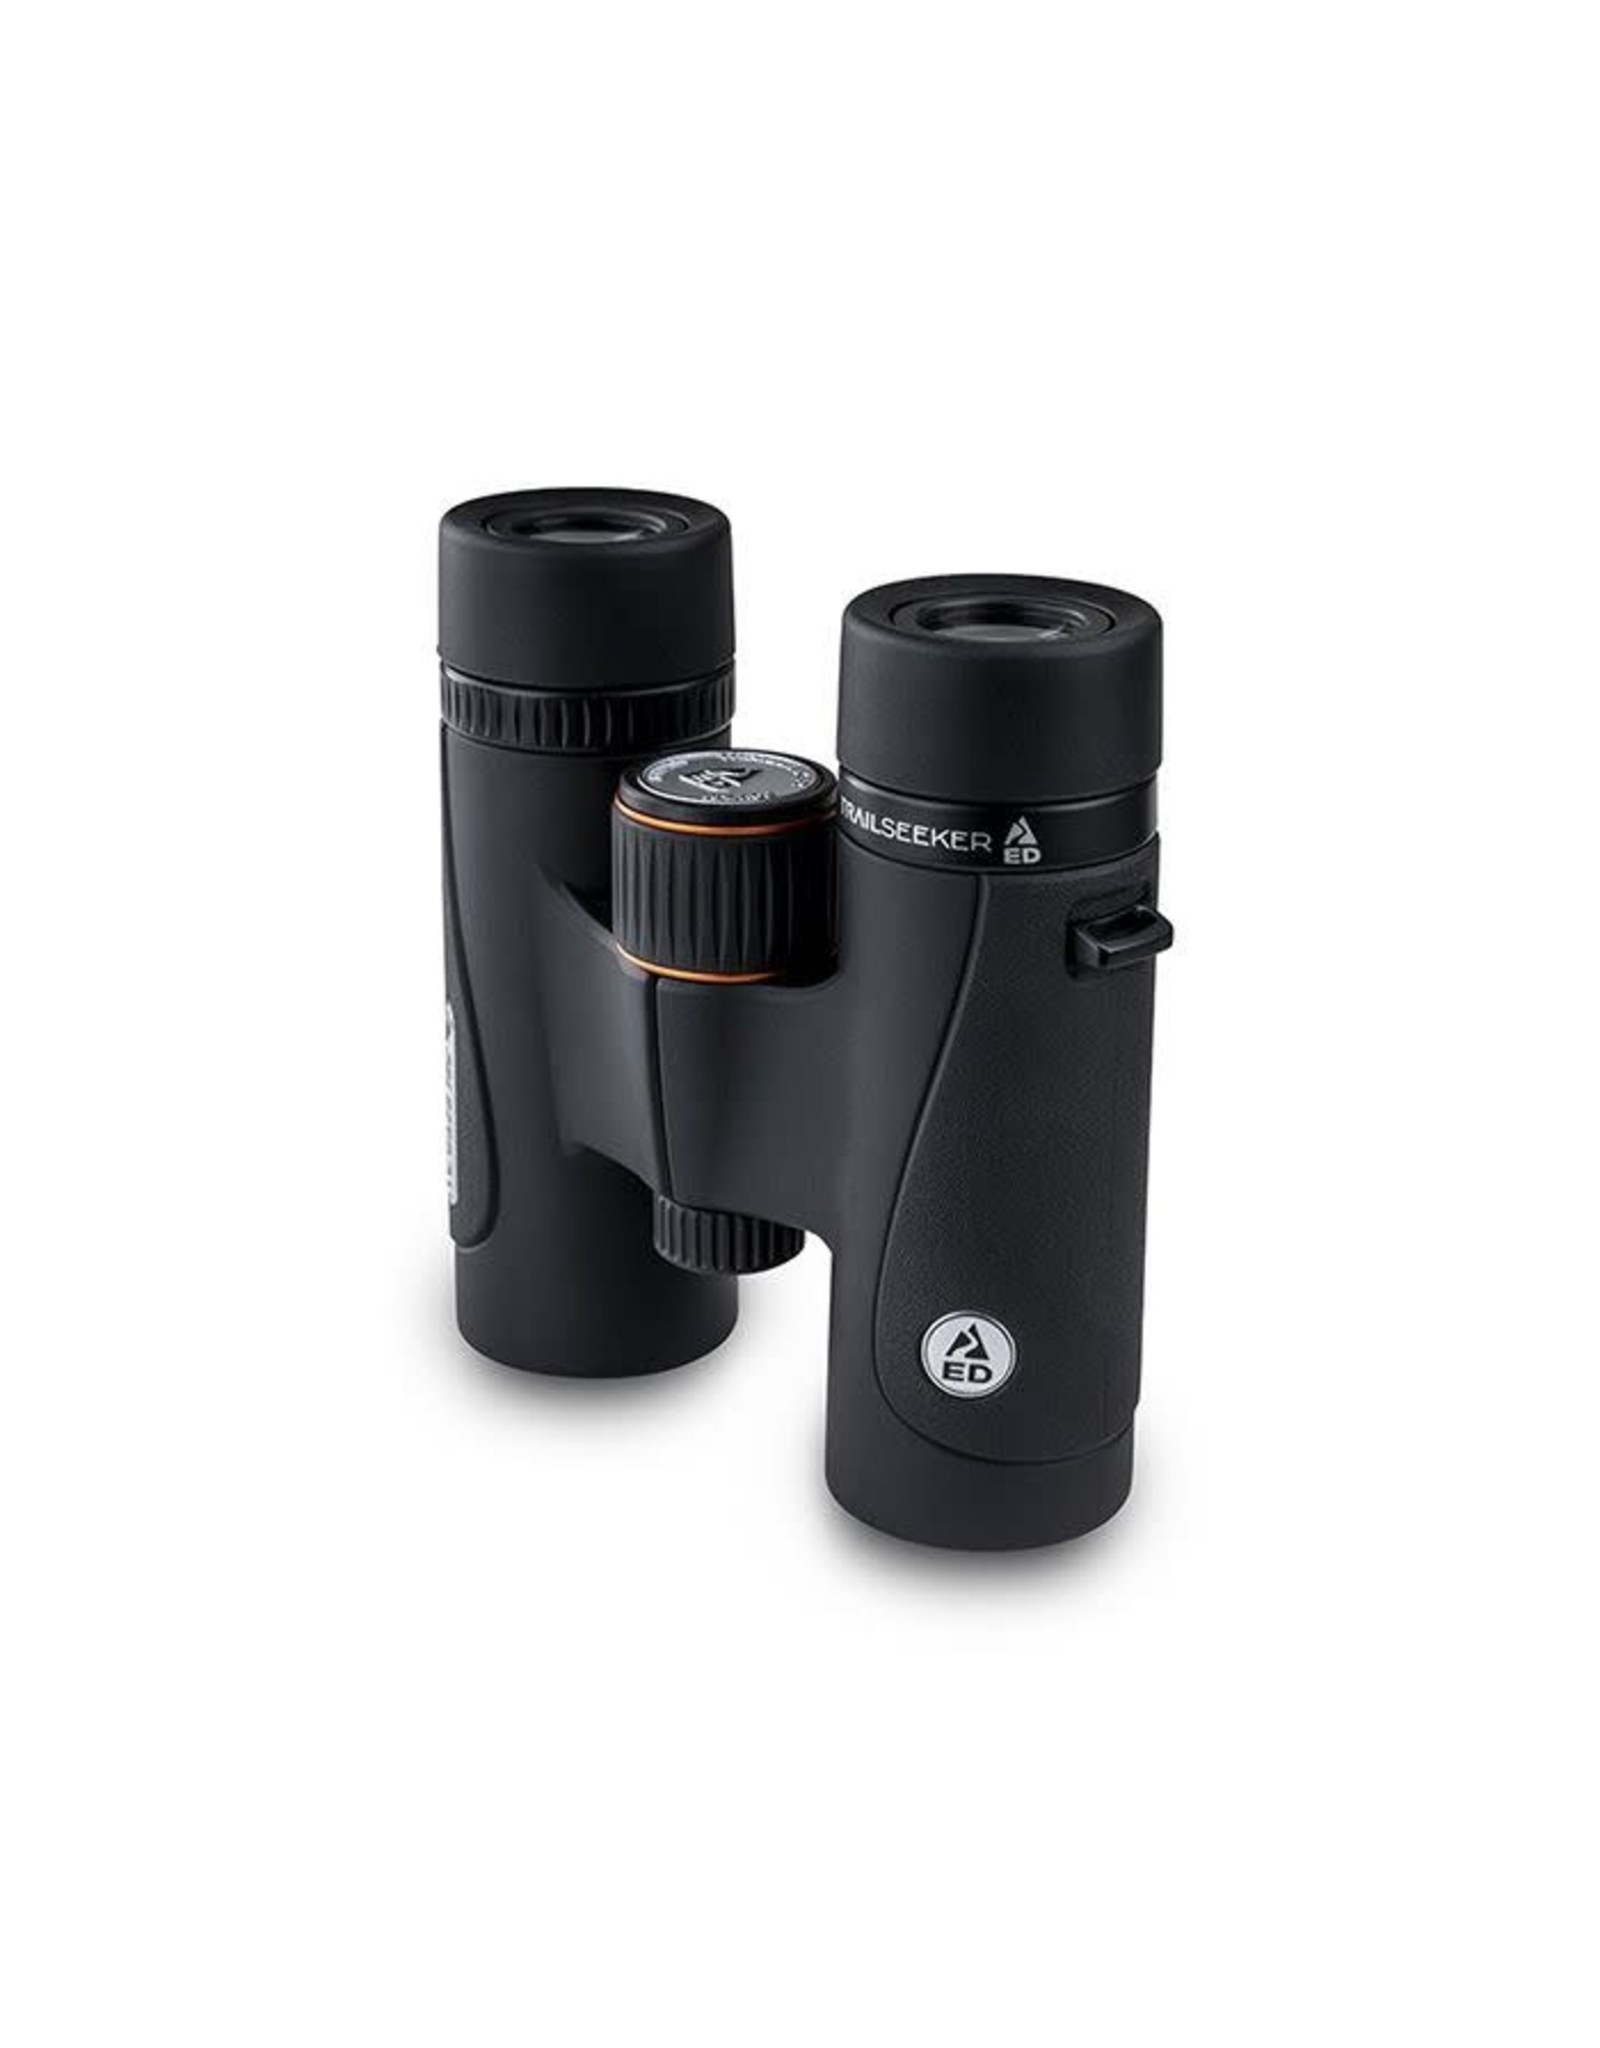 Celestron Celestron 8x32 TrailSeeker ED Binoculars